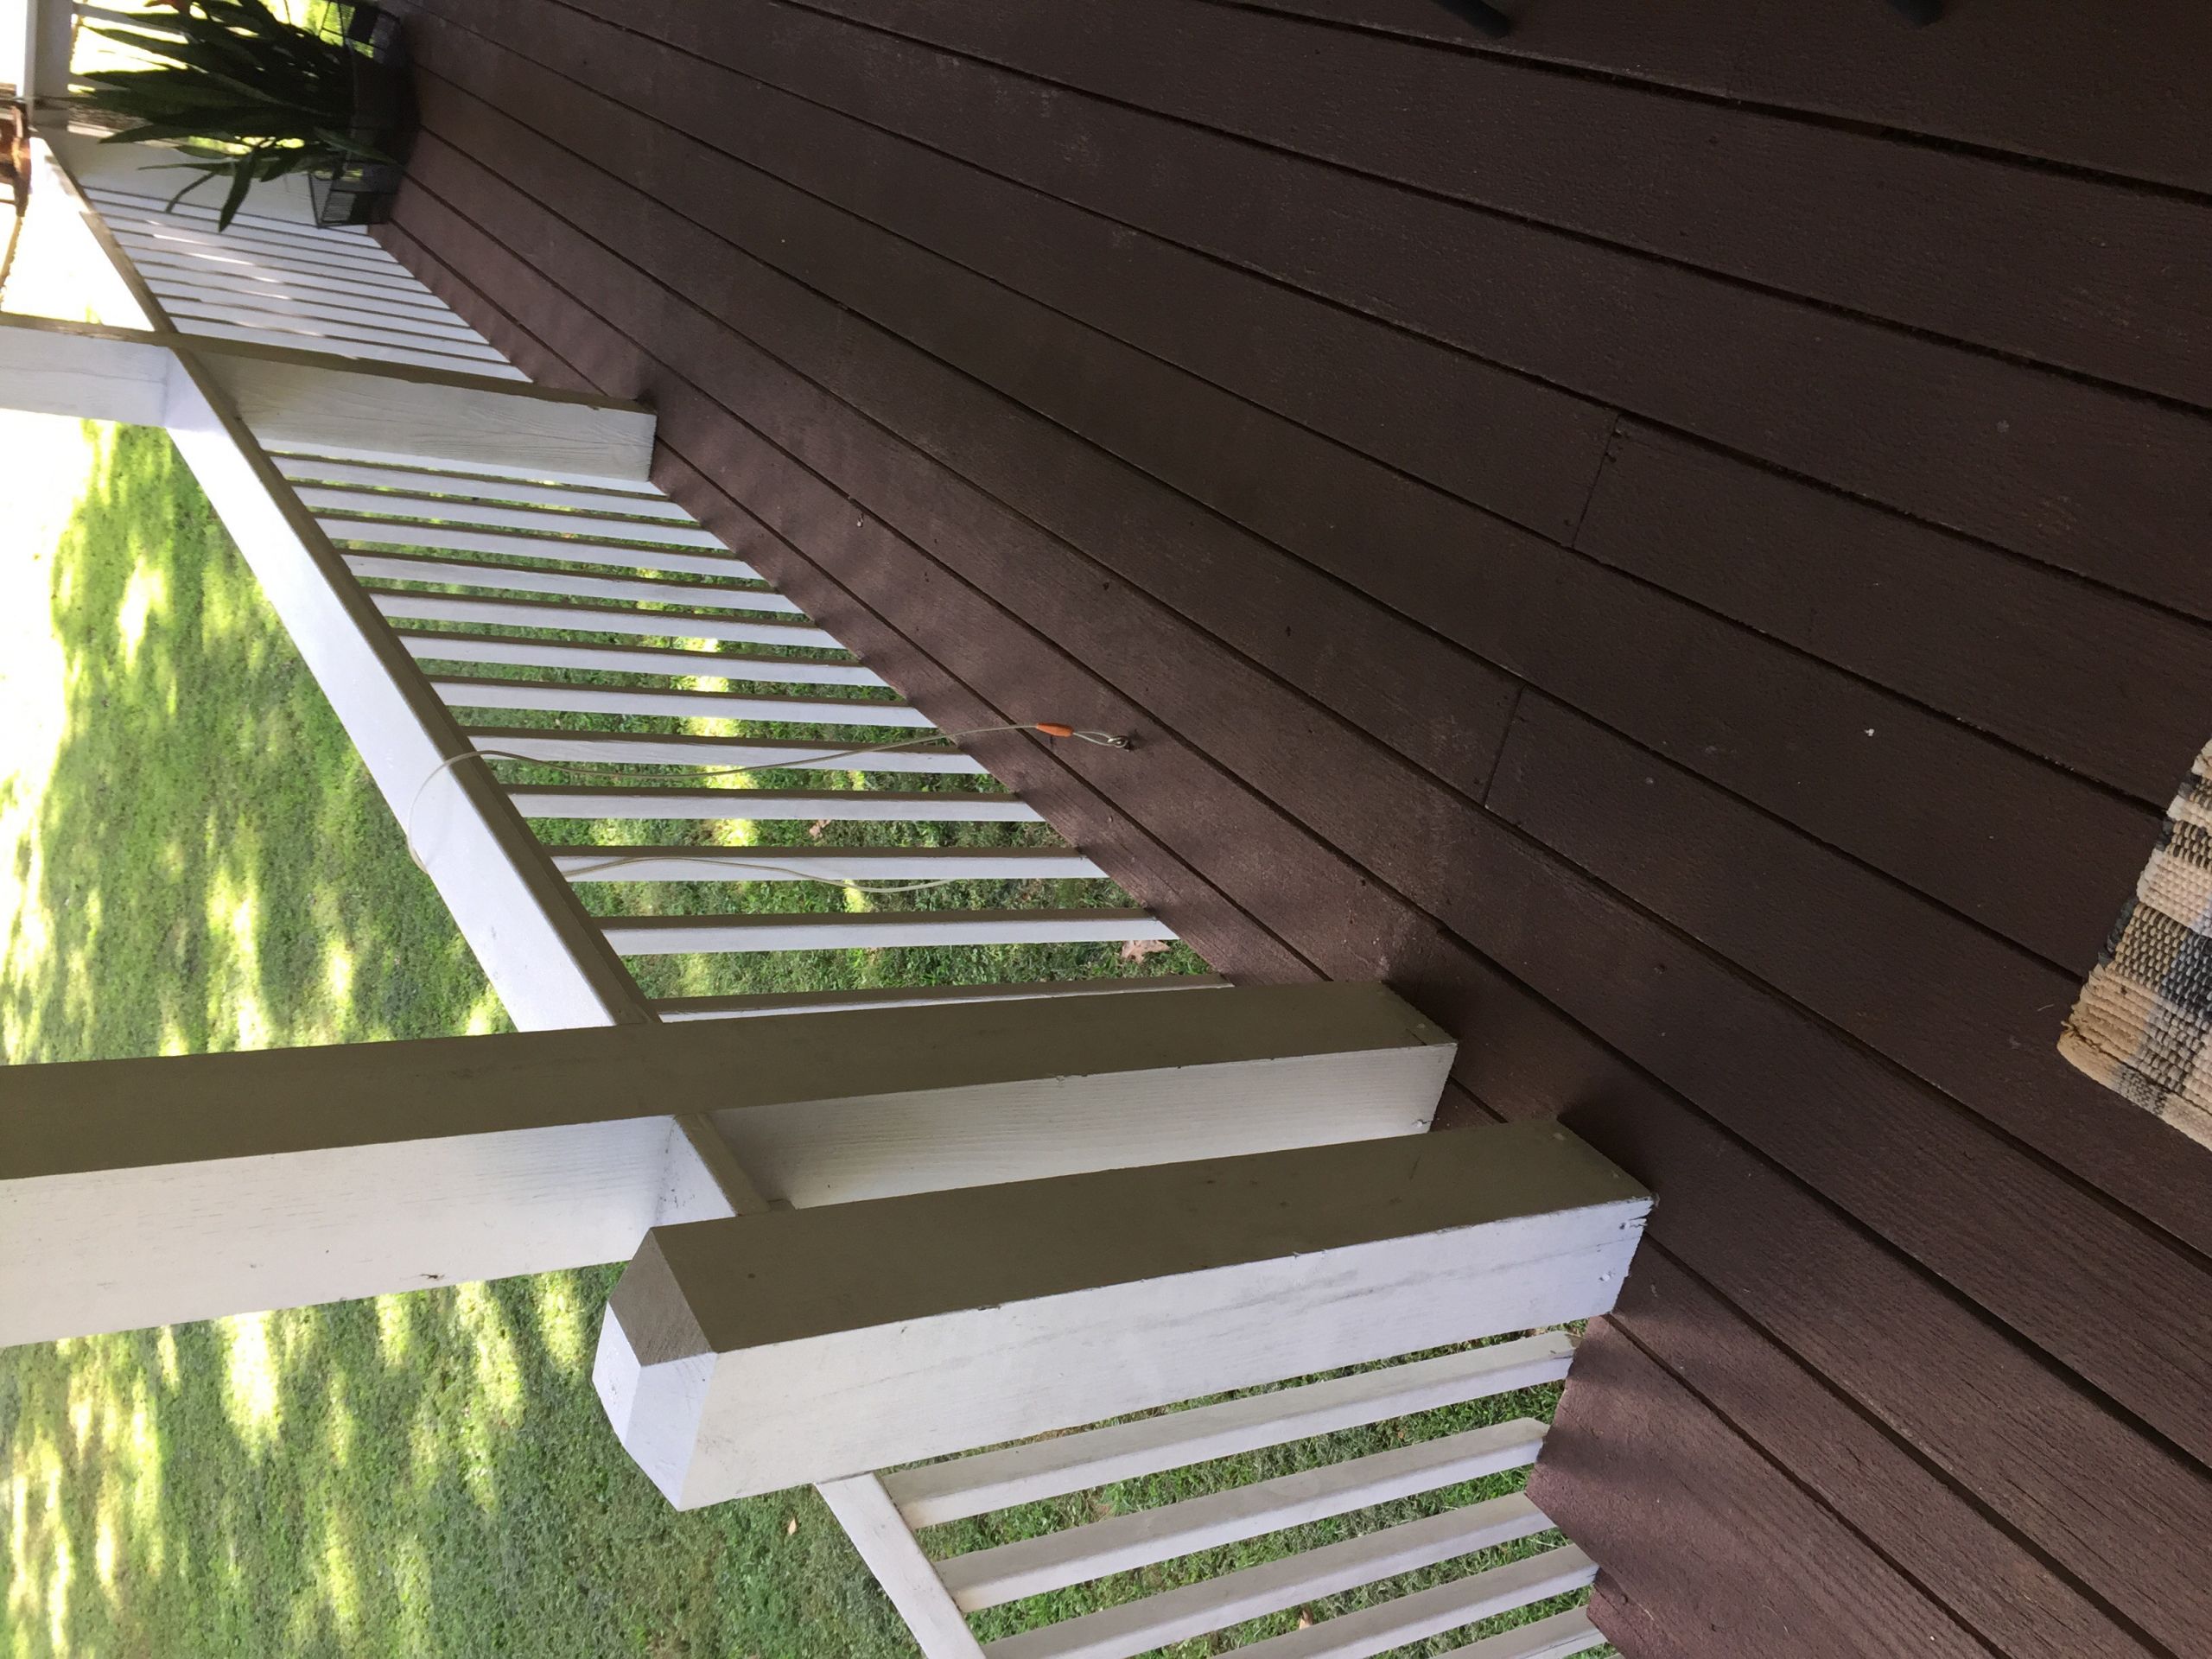 Deck Restoration Paint Reviews
 Class Action Lawsuit against Rust Oleum Deck Restore